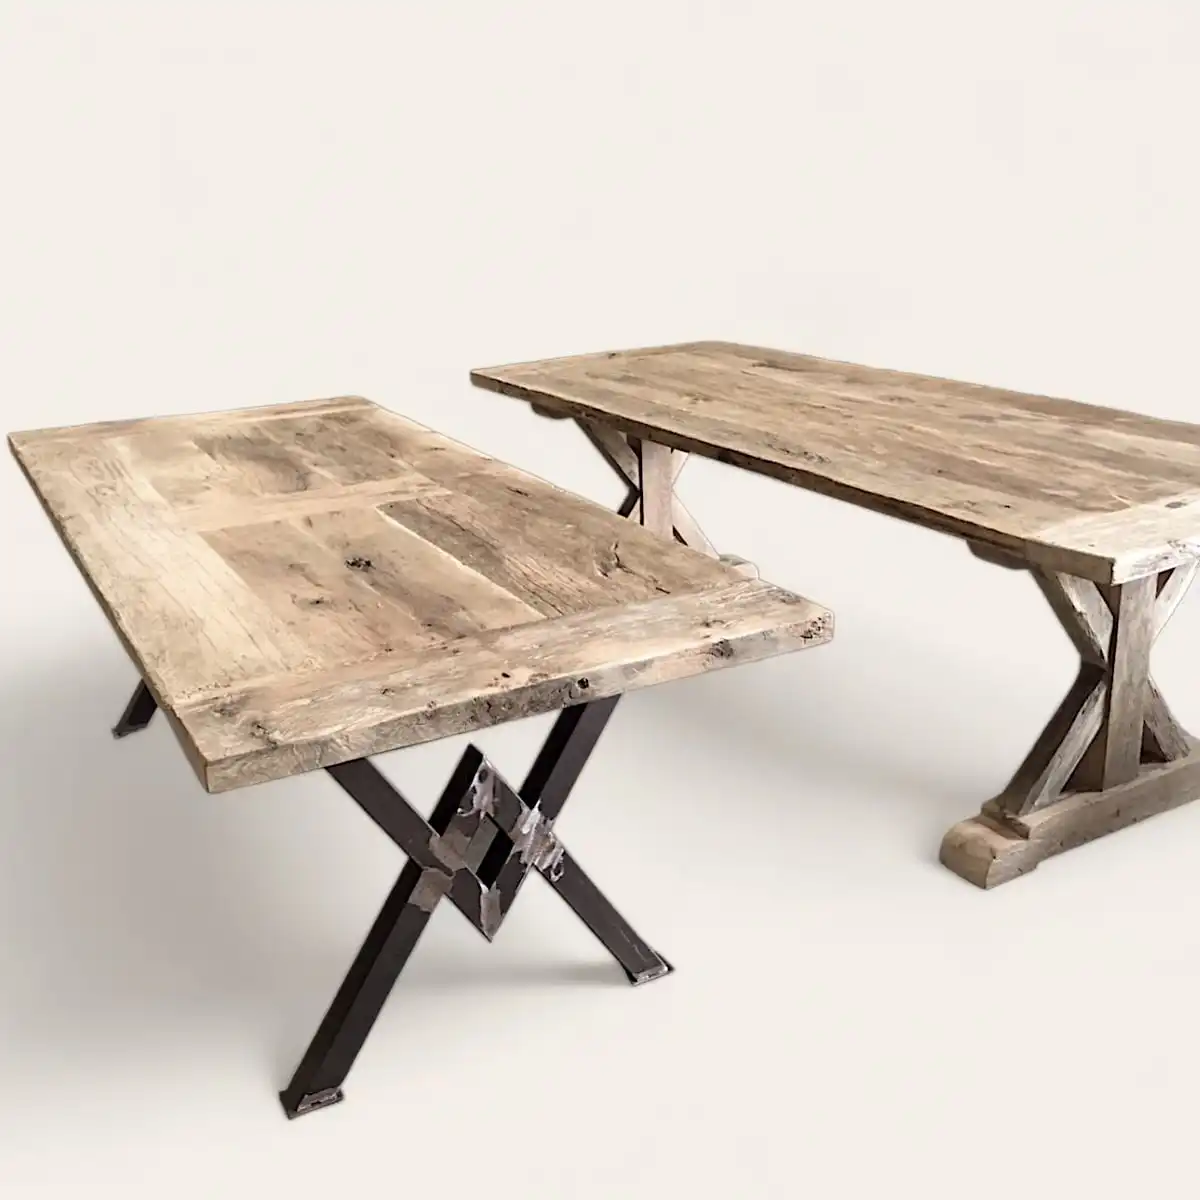  Ensemble de tables rustiques en bois ancien avec des supports en croix, l'une avec des pieds en bois massif et l'autre avec des pieds en métal noir, reflétant un mélange harmonieux de robustesse et d'élégance rustique. 